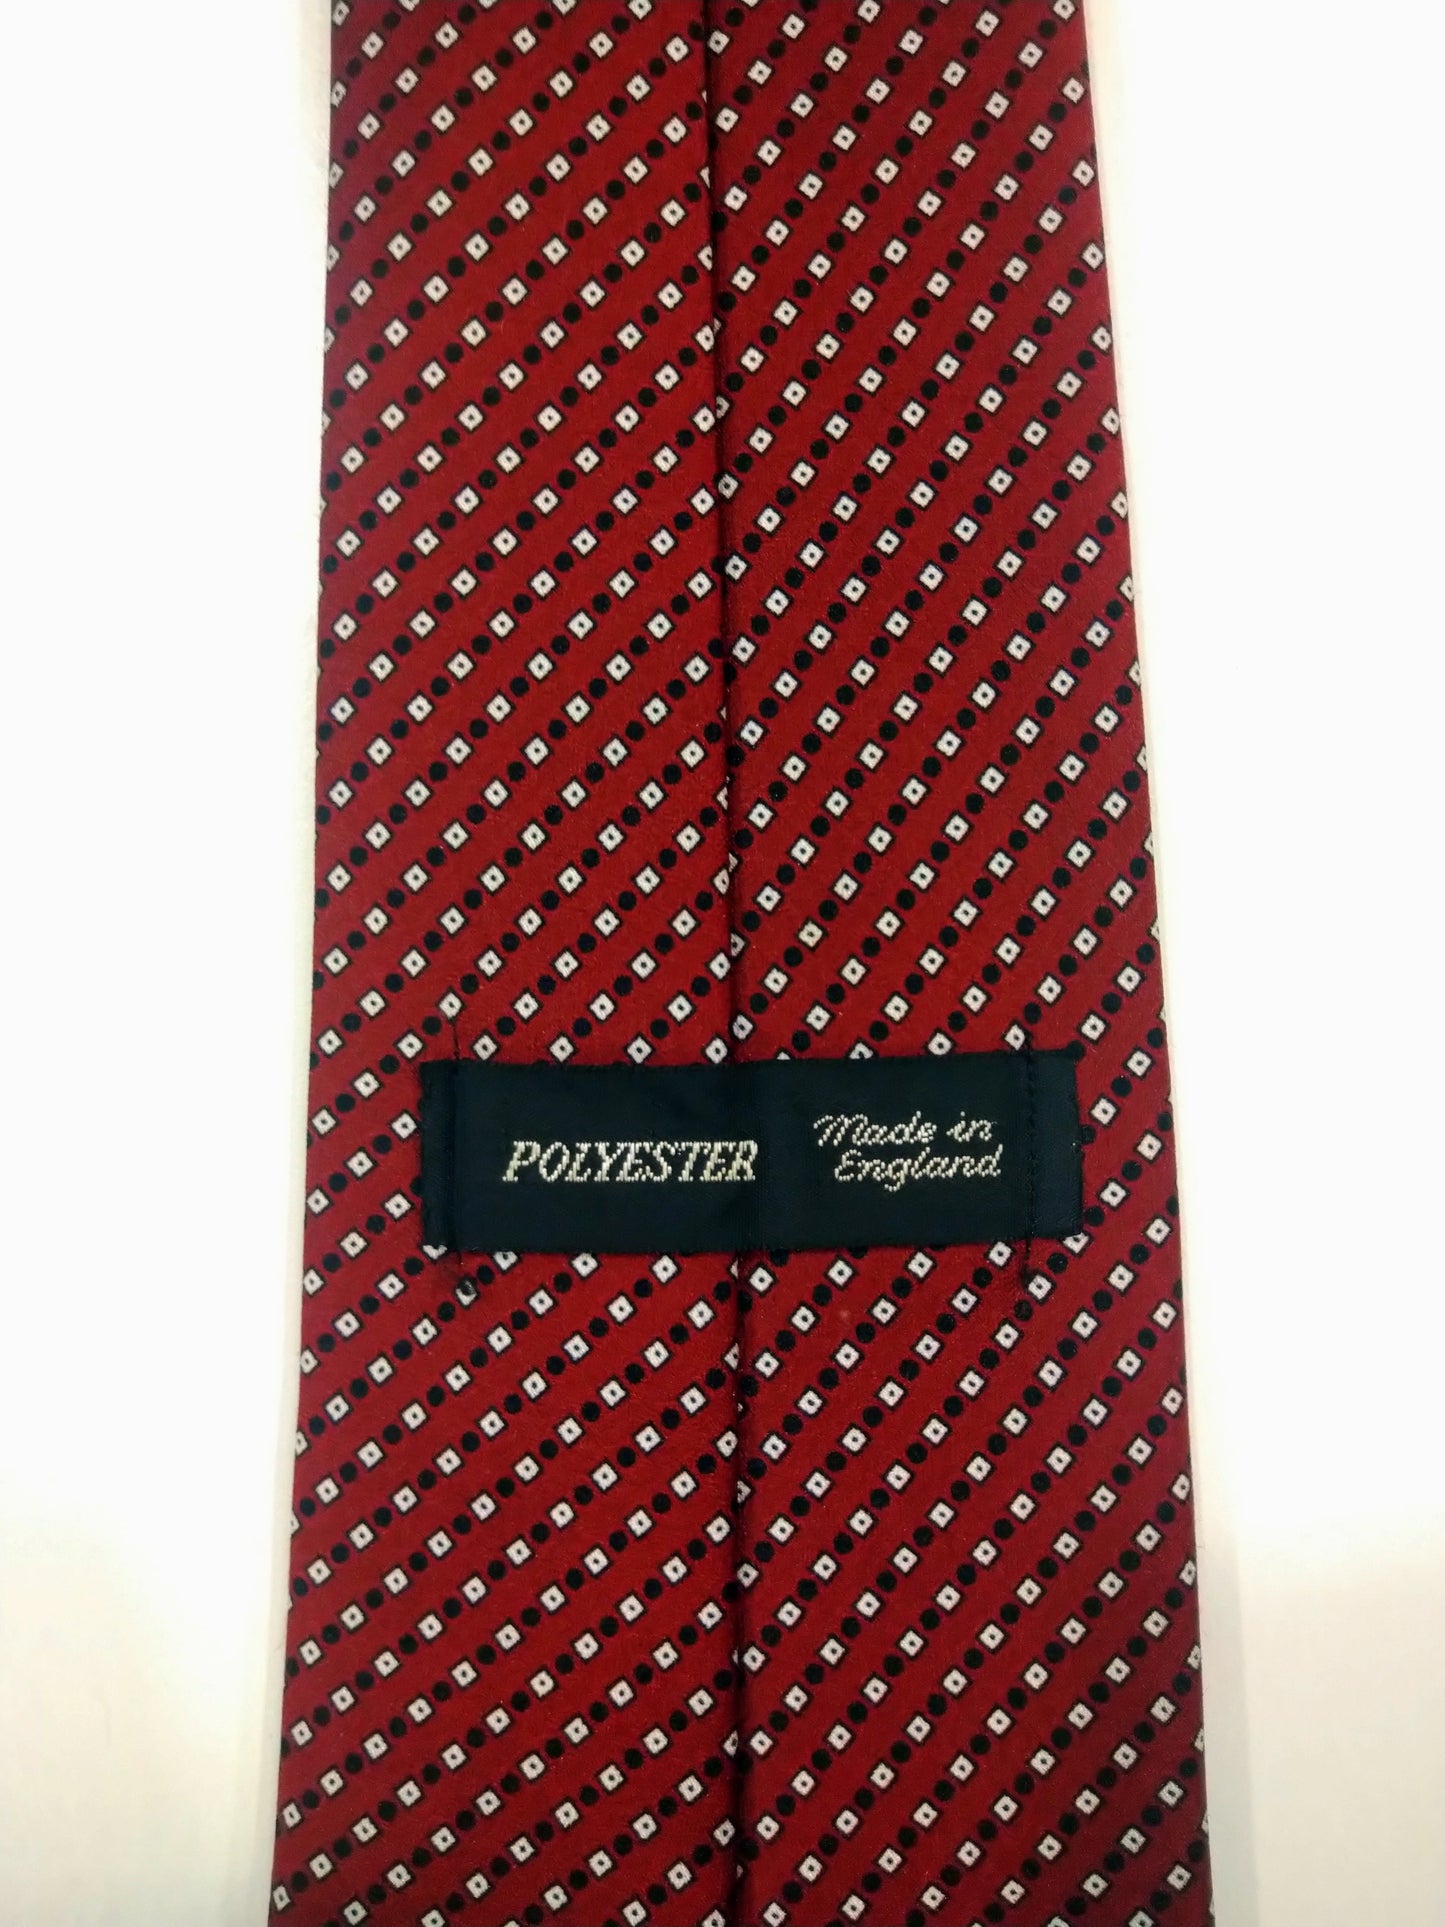 Polyester stropdas. Rood zwart wit motief.